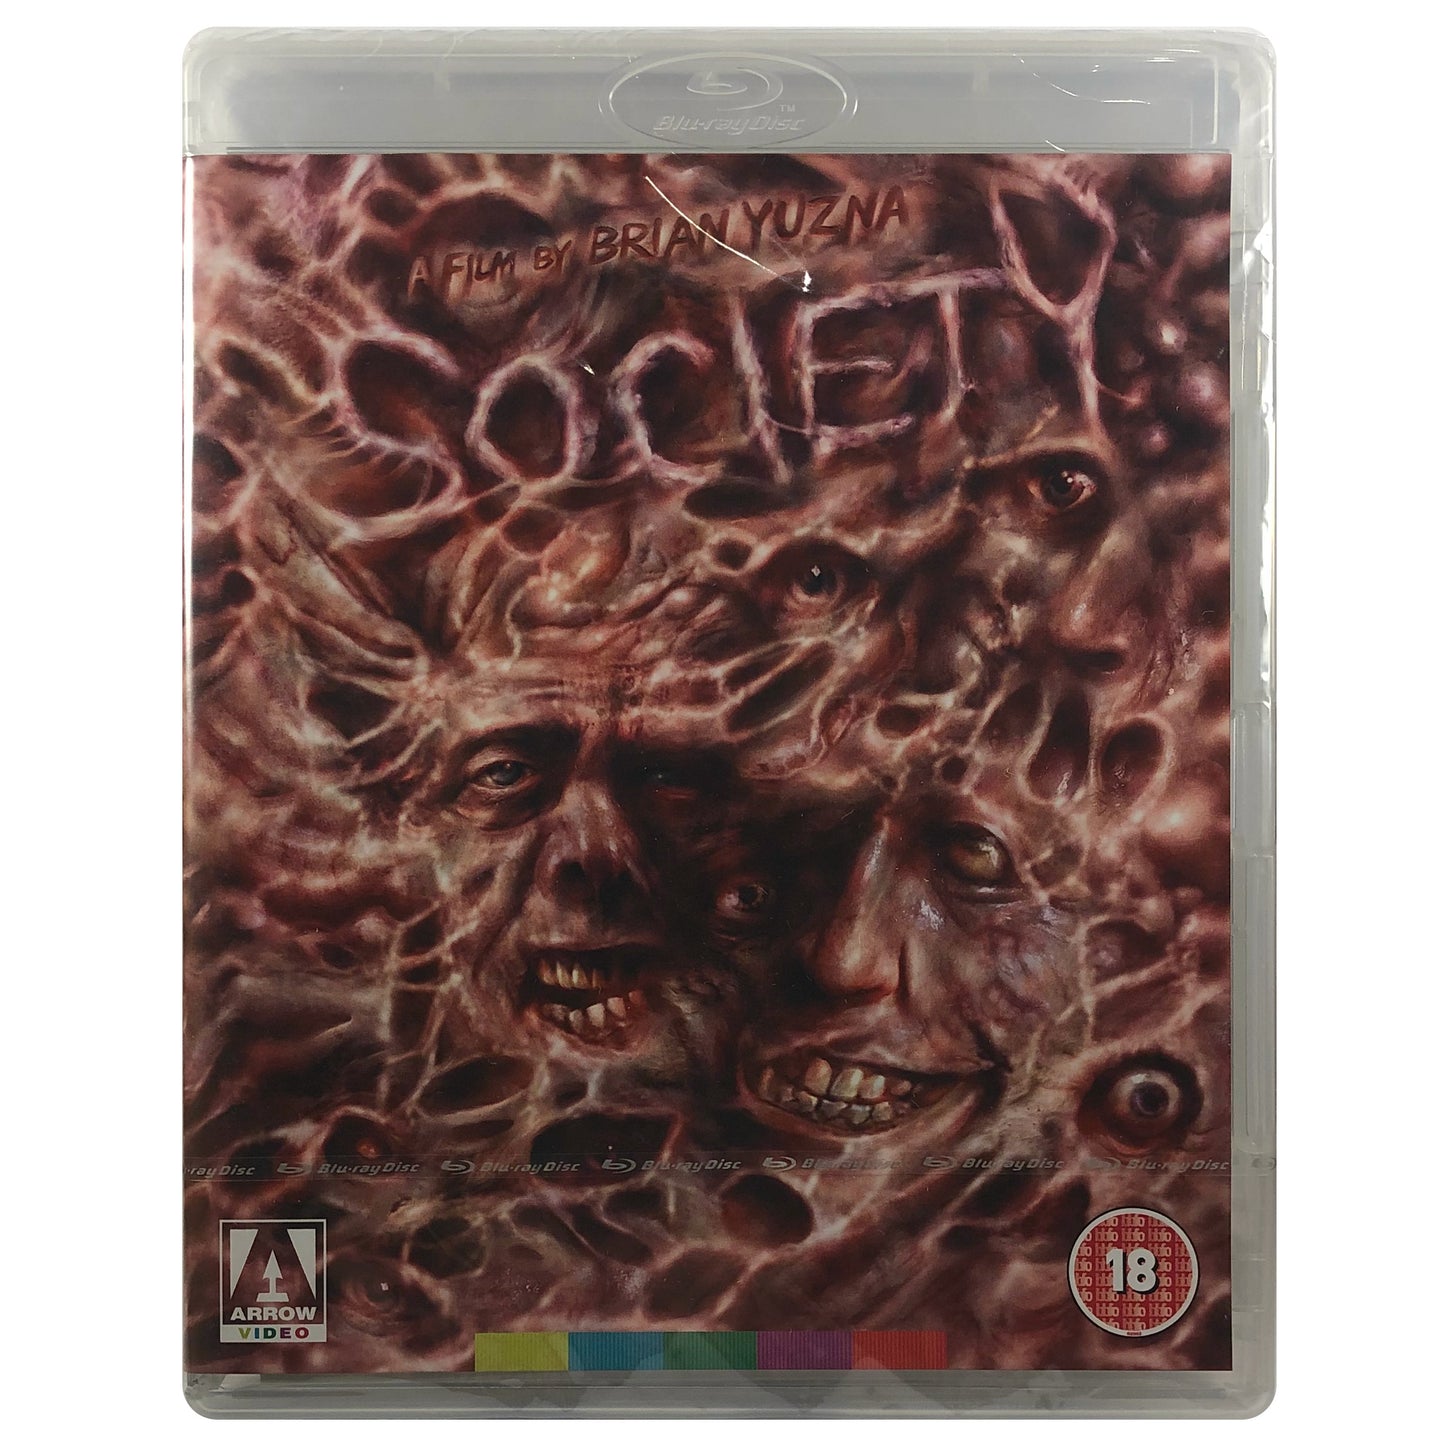 Society Blu-Ray - Slightly Bent Case